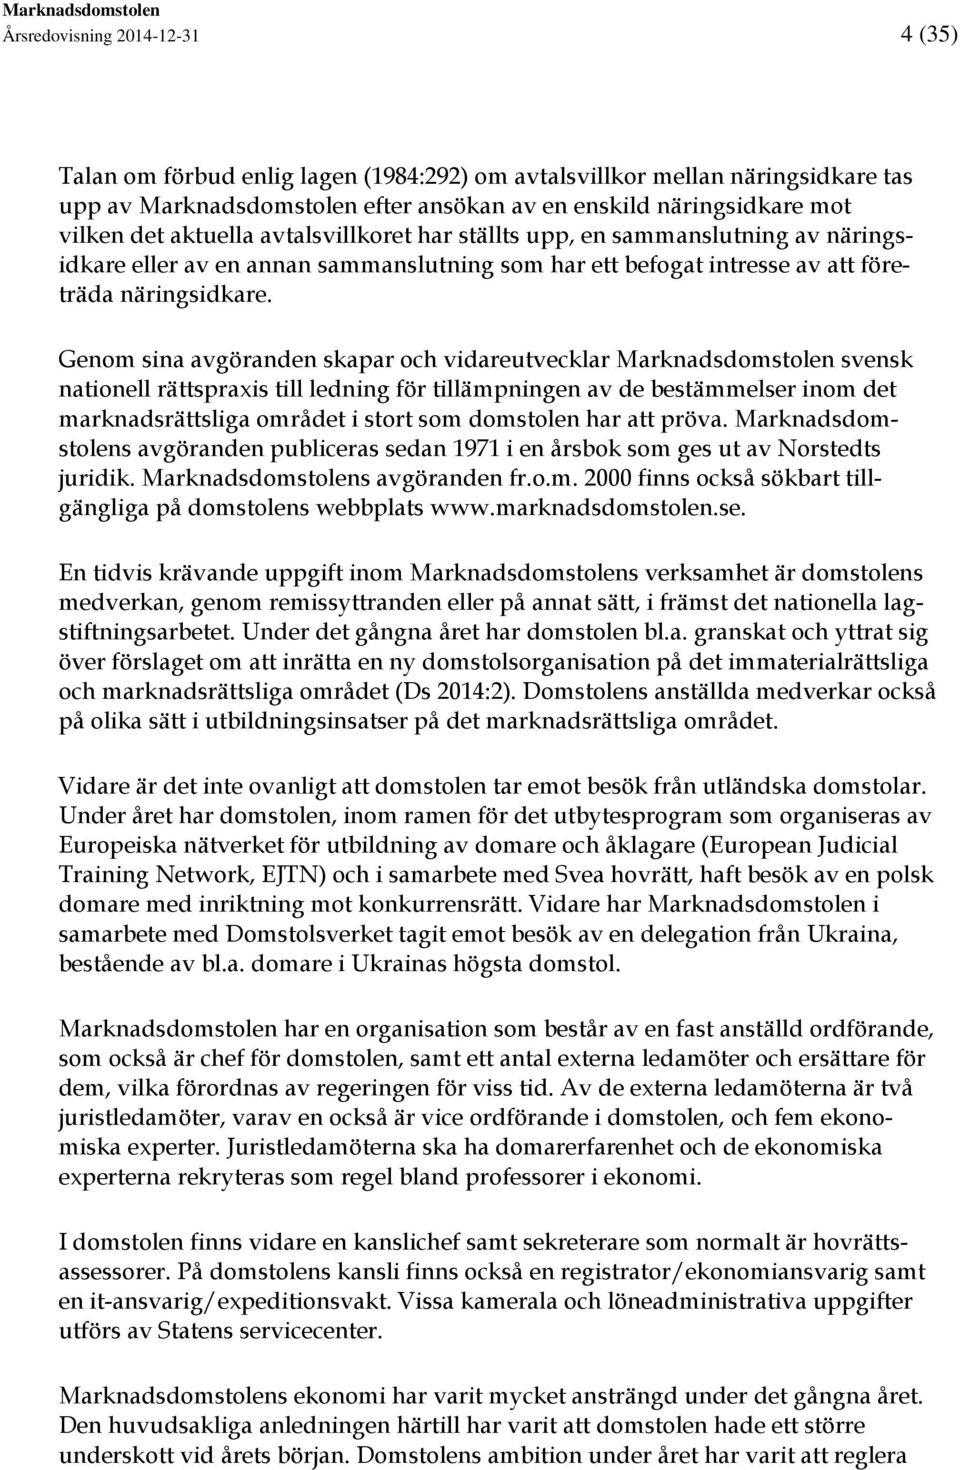 Genom sina avgöranden skapar och vidareutvecklar Marknadsdomstolen svensk nationell rättspraxis till ledning för tillämpningen av de bestämmelser inom det marknadsrättsliga området i stort som